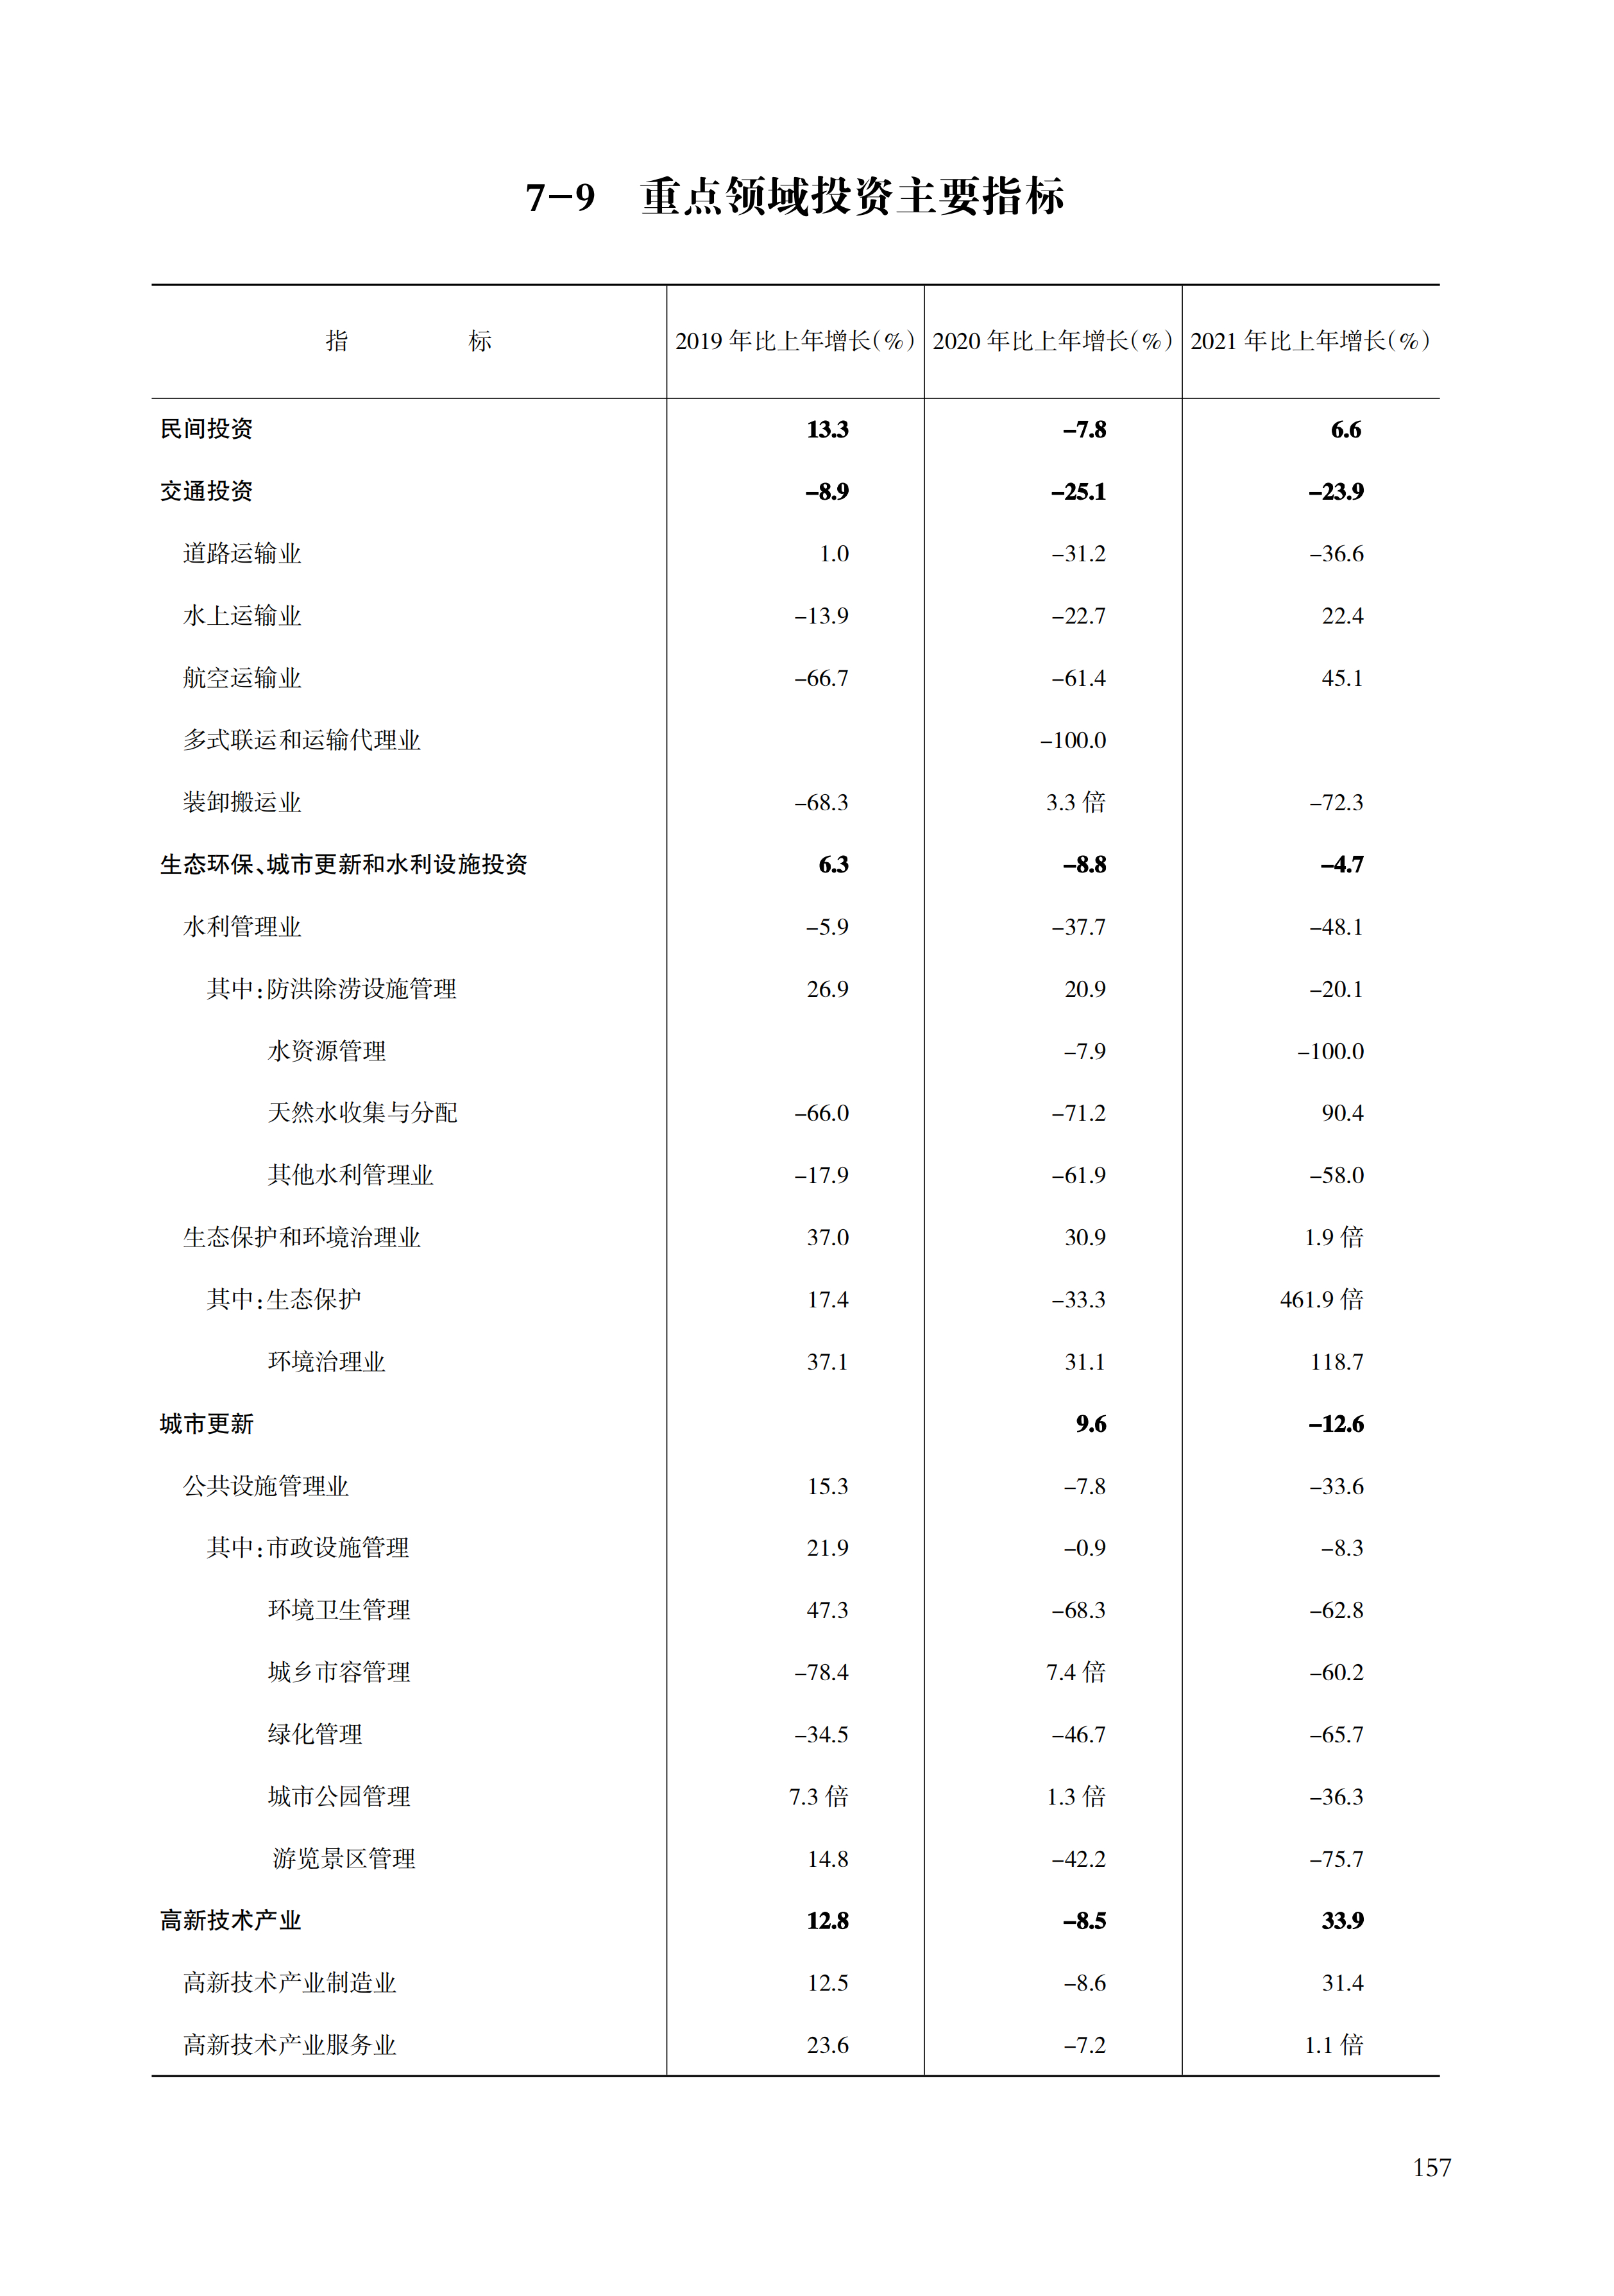 舟山统计年鉴2022（11-30）_178.png